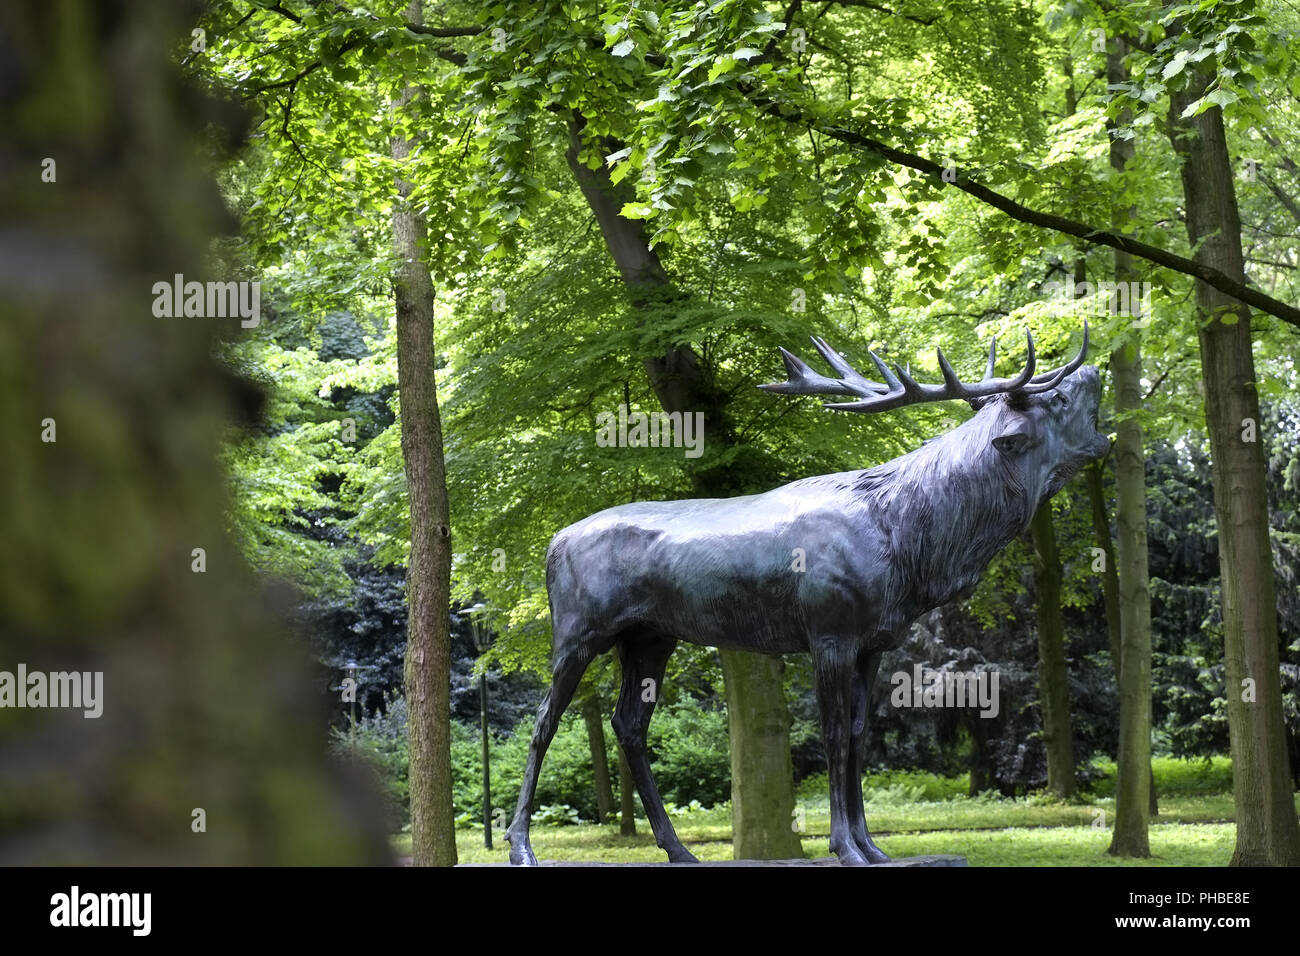 Deer, sculpture of a roaring deer, Dusseldorf Stock Photo